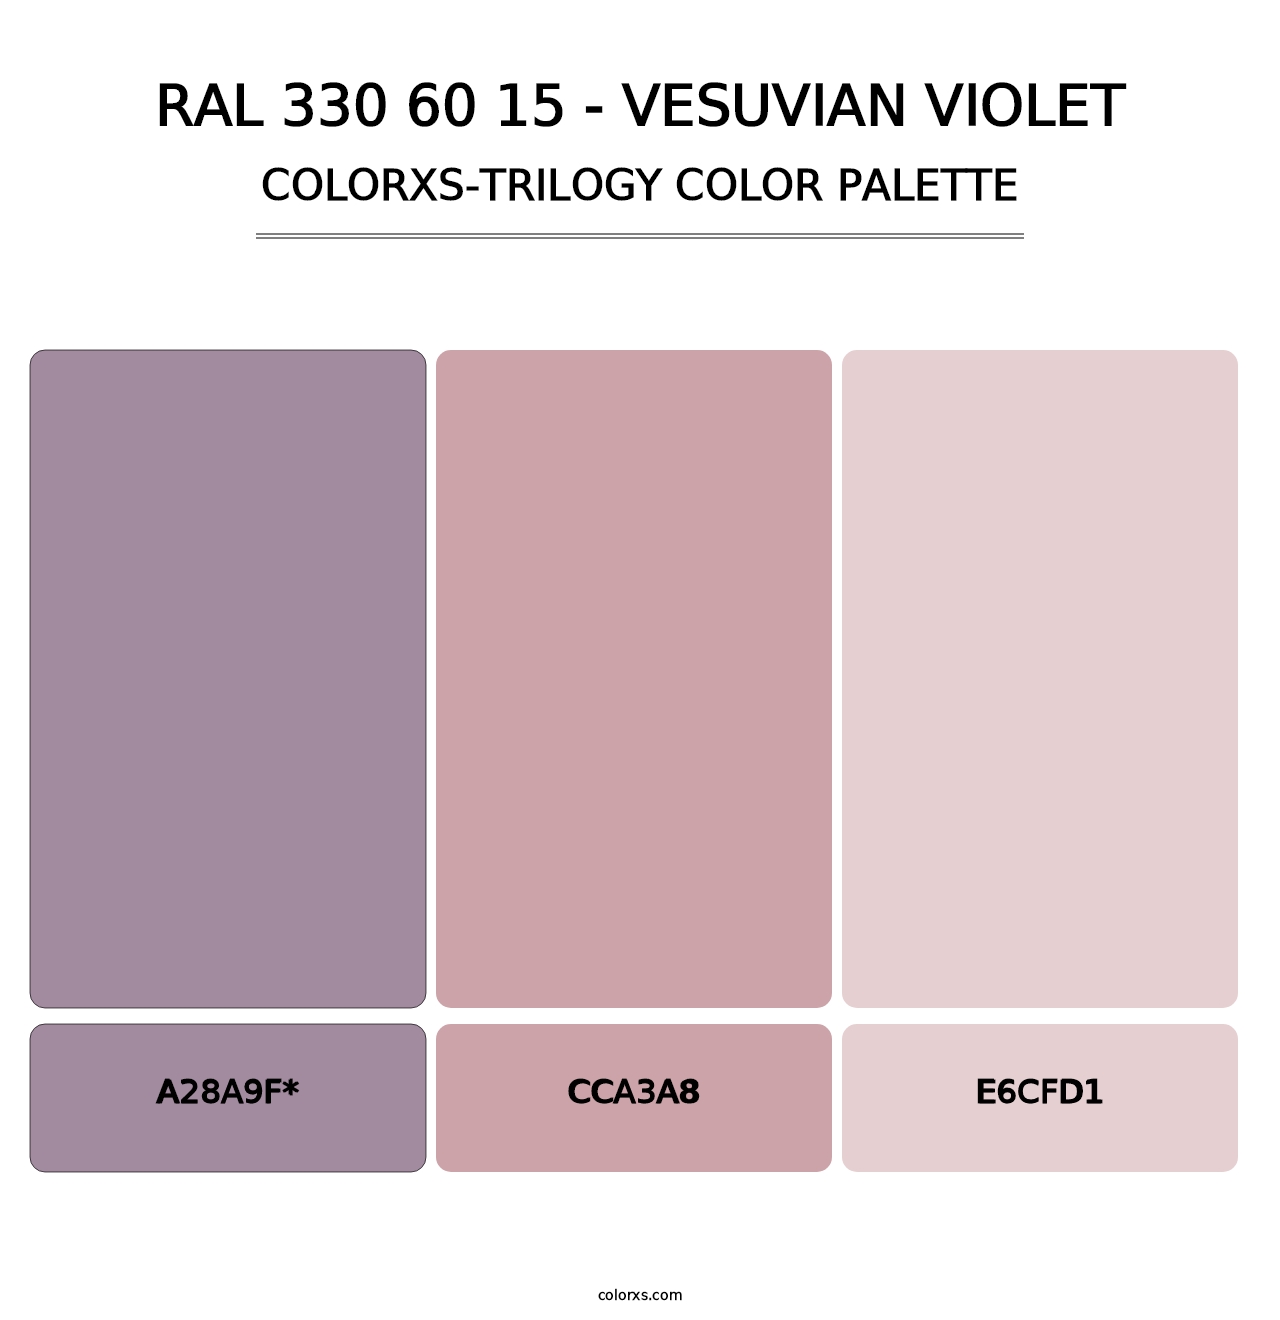 RAL 330 60 15 - Vesuvian Violet - Colorxs Trilogy Palette